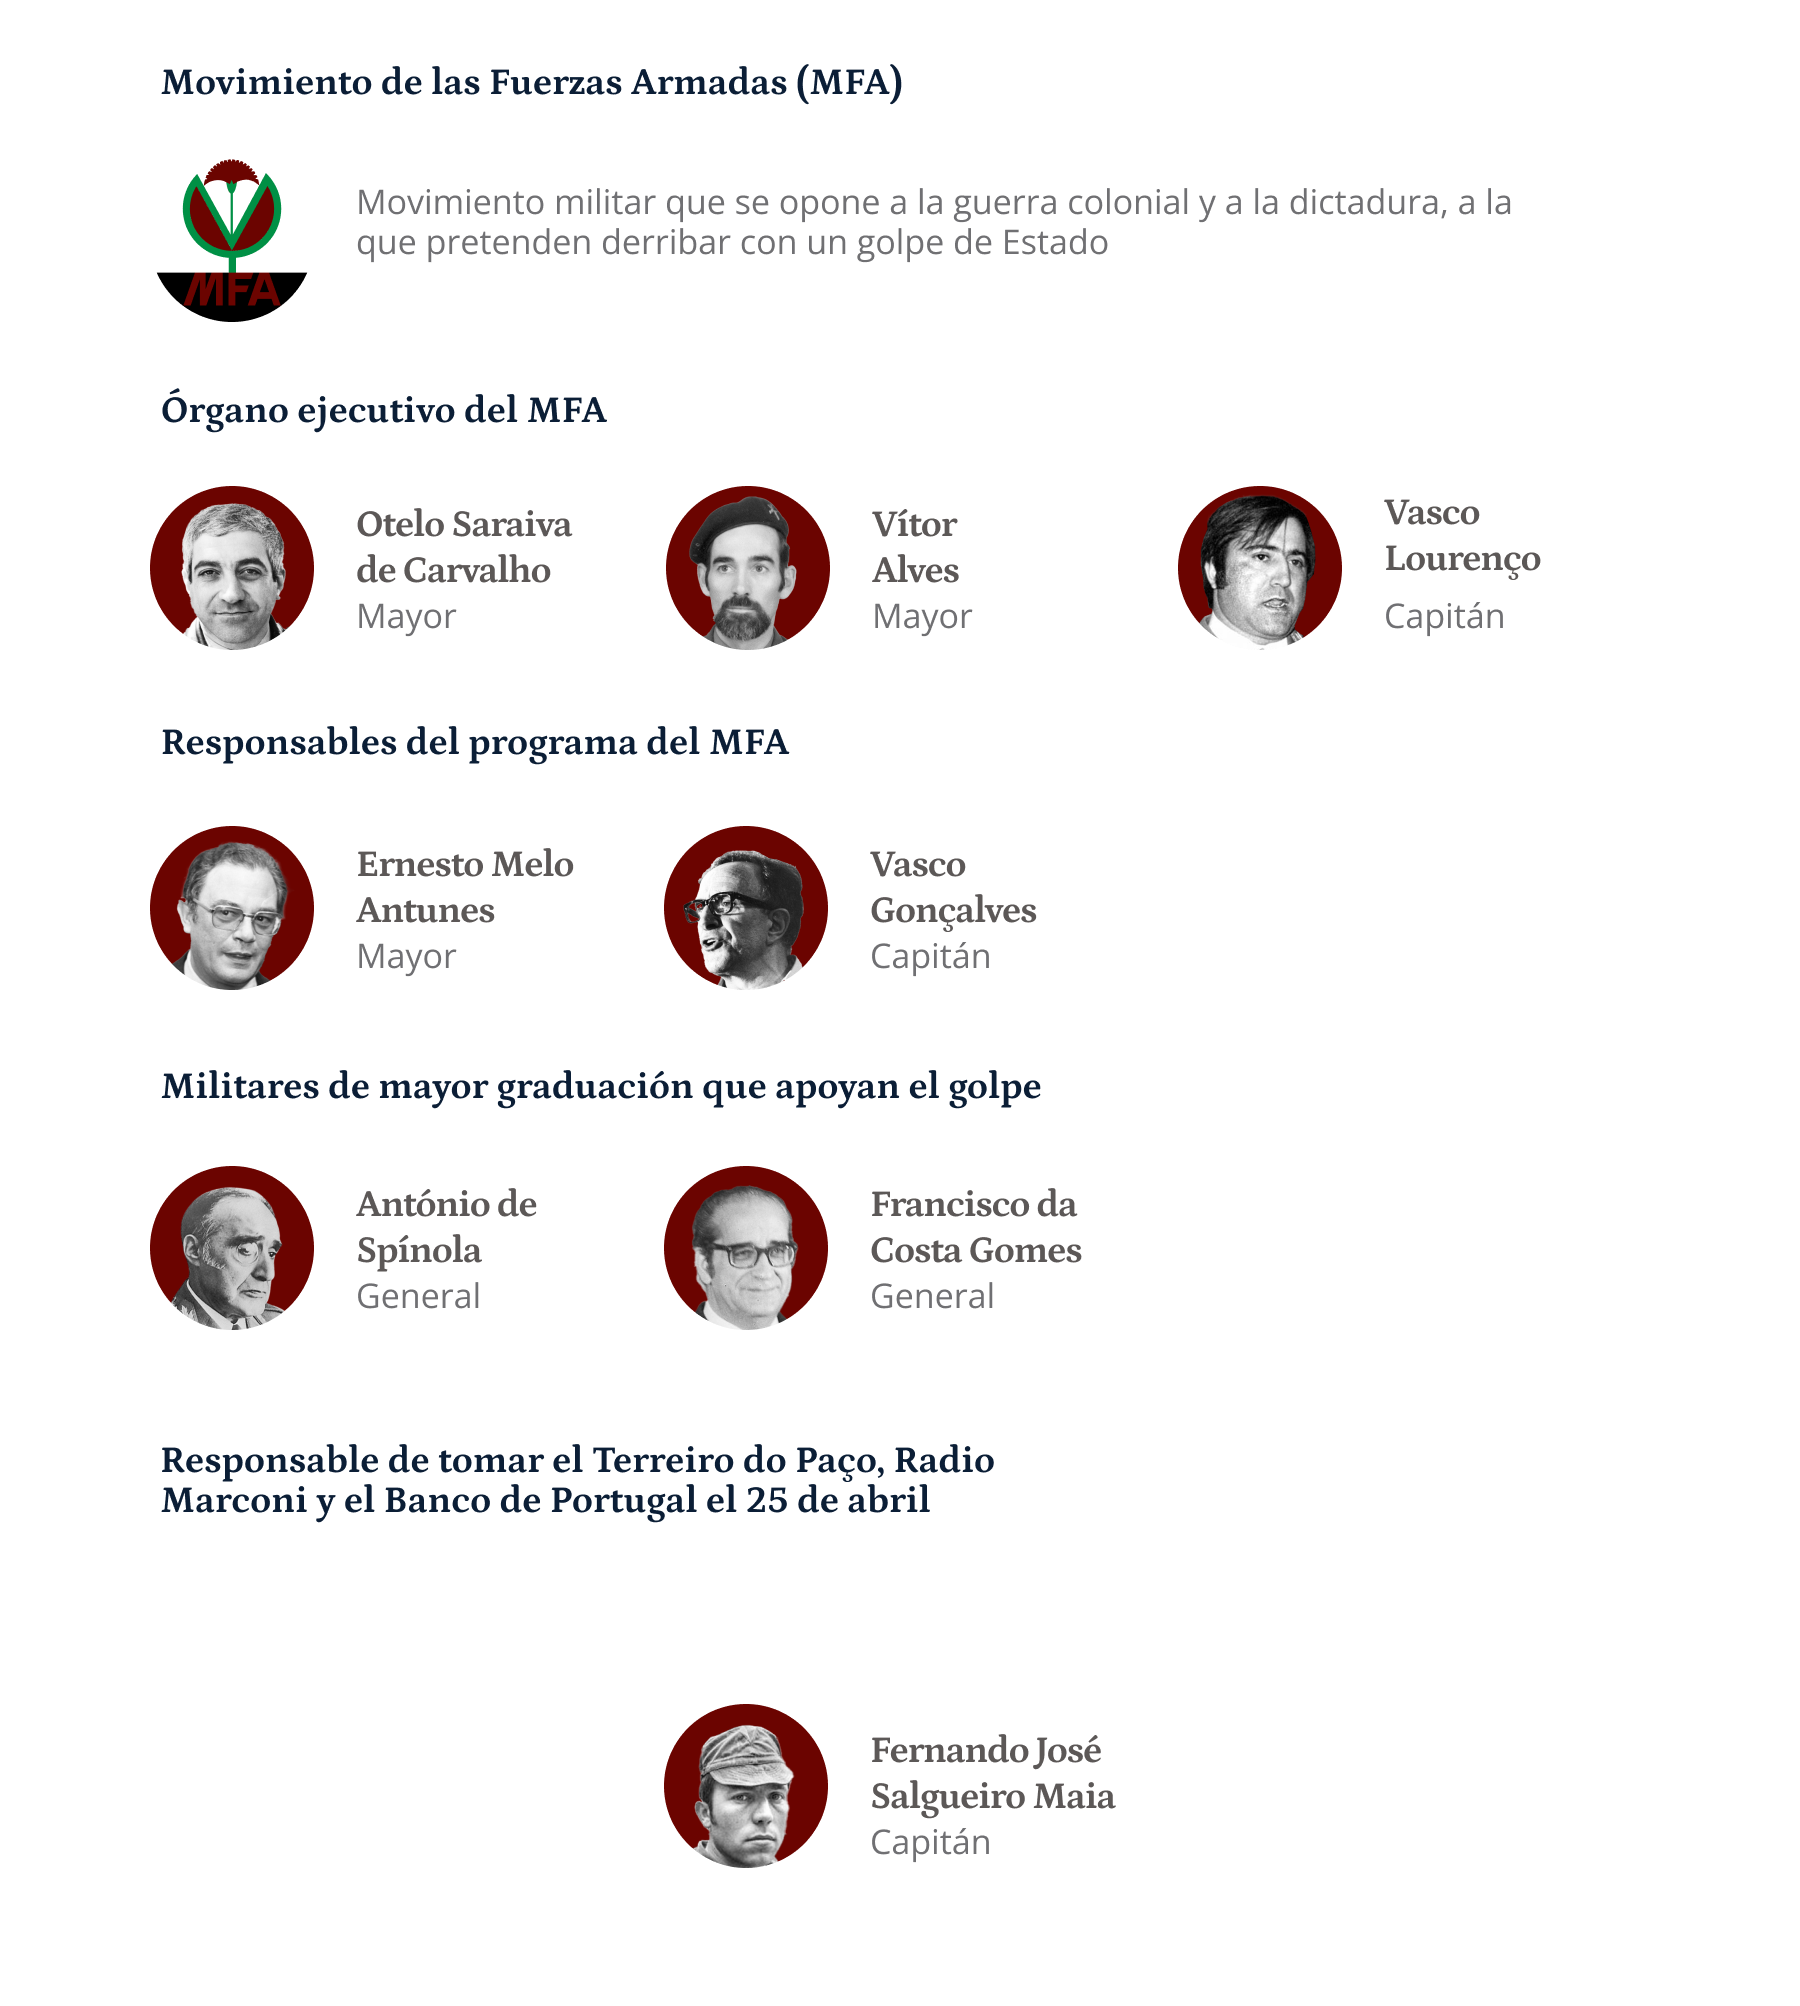 Principales figuras del Movimiento de las Fuerzas Armadas (MFA), movimiento militar opuesto a la dictadura y a las guerras coloniales en Portugal